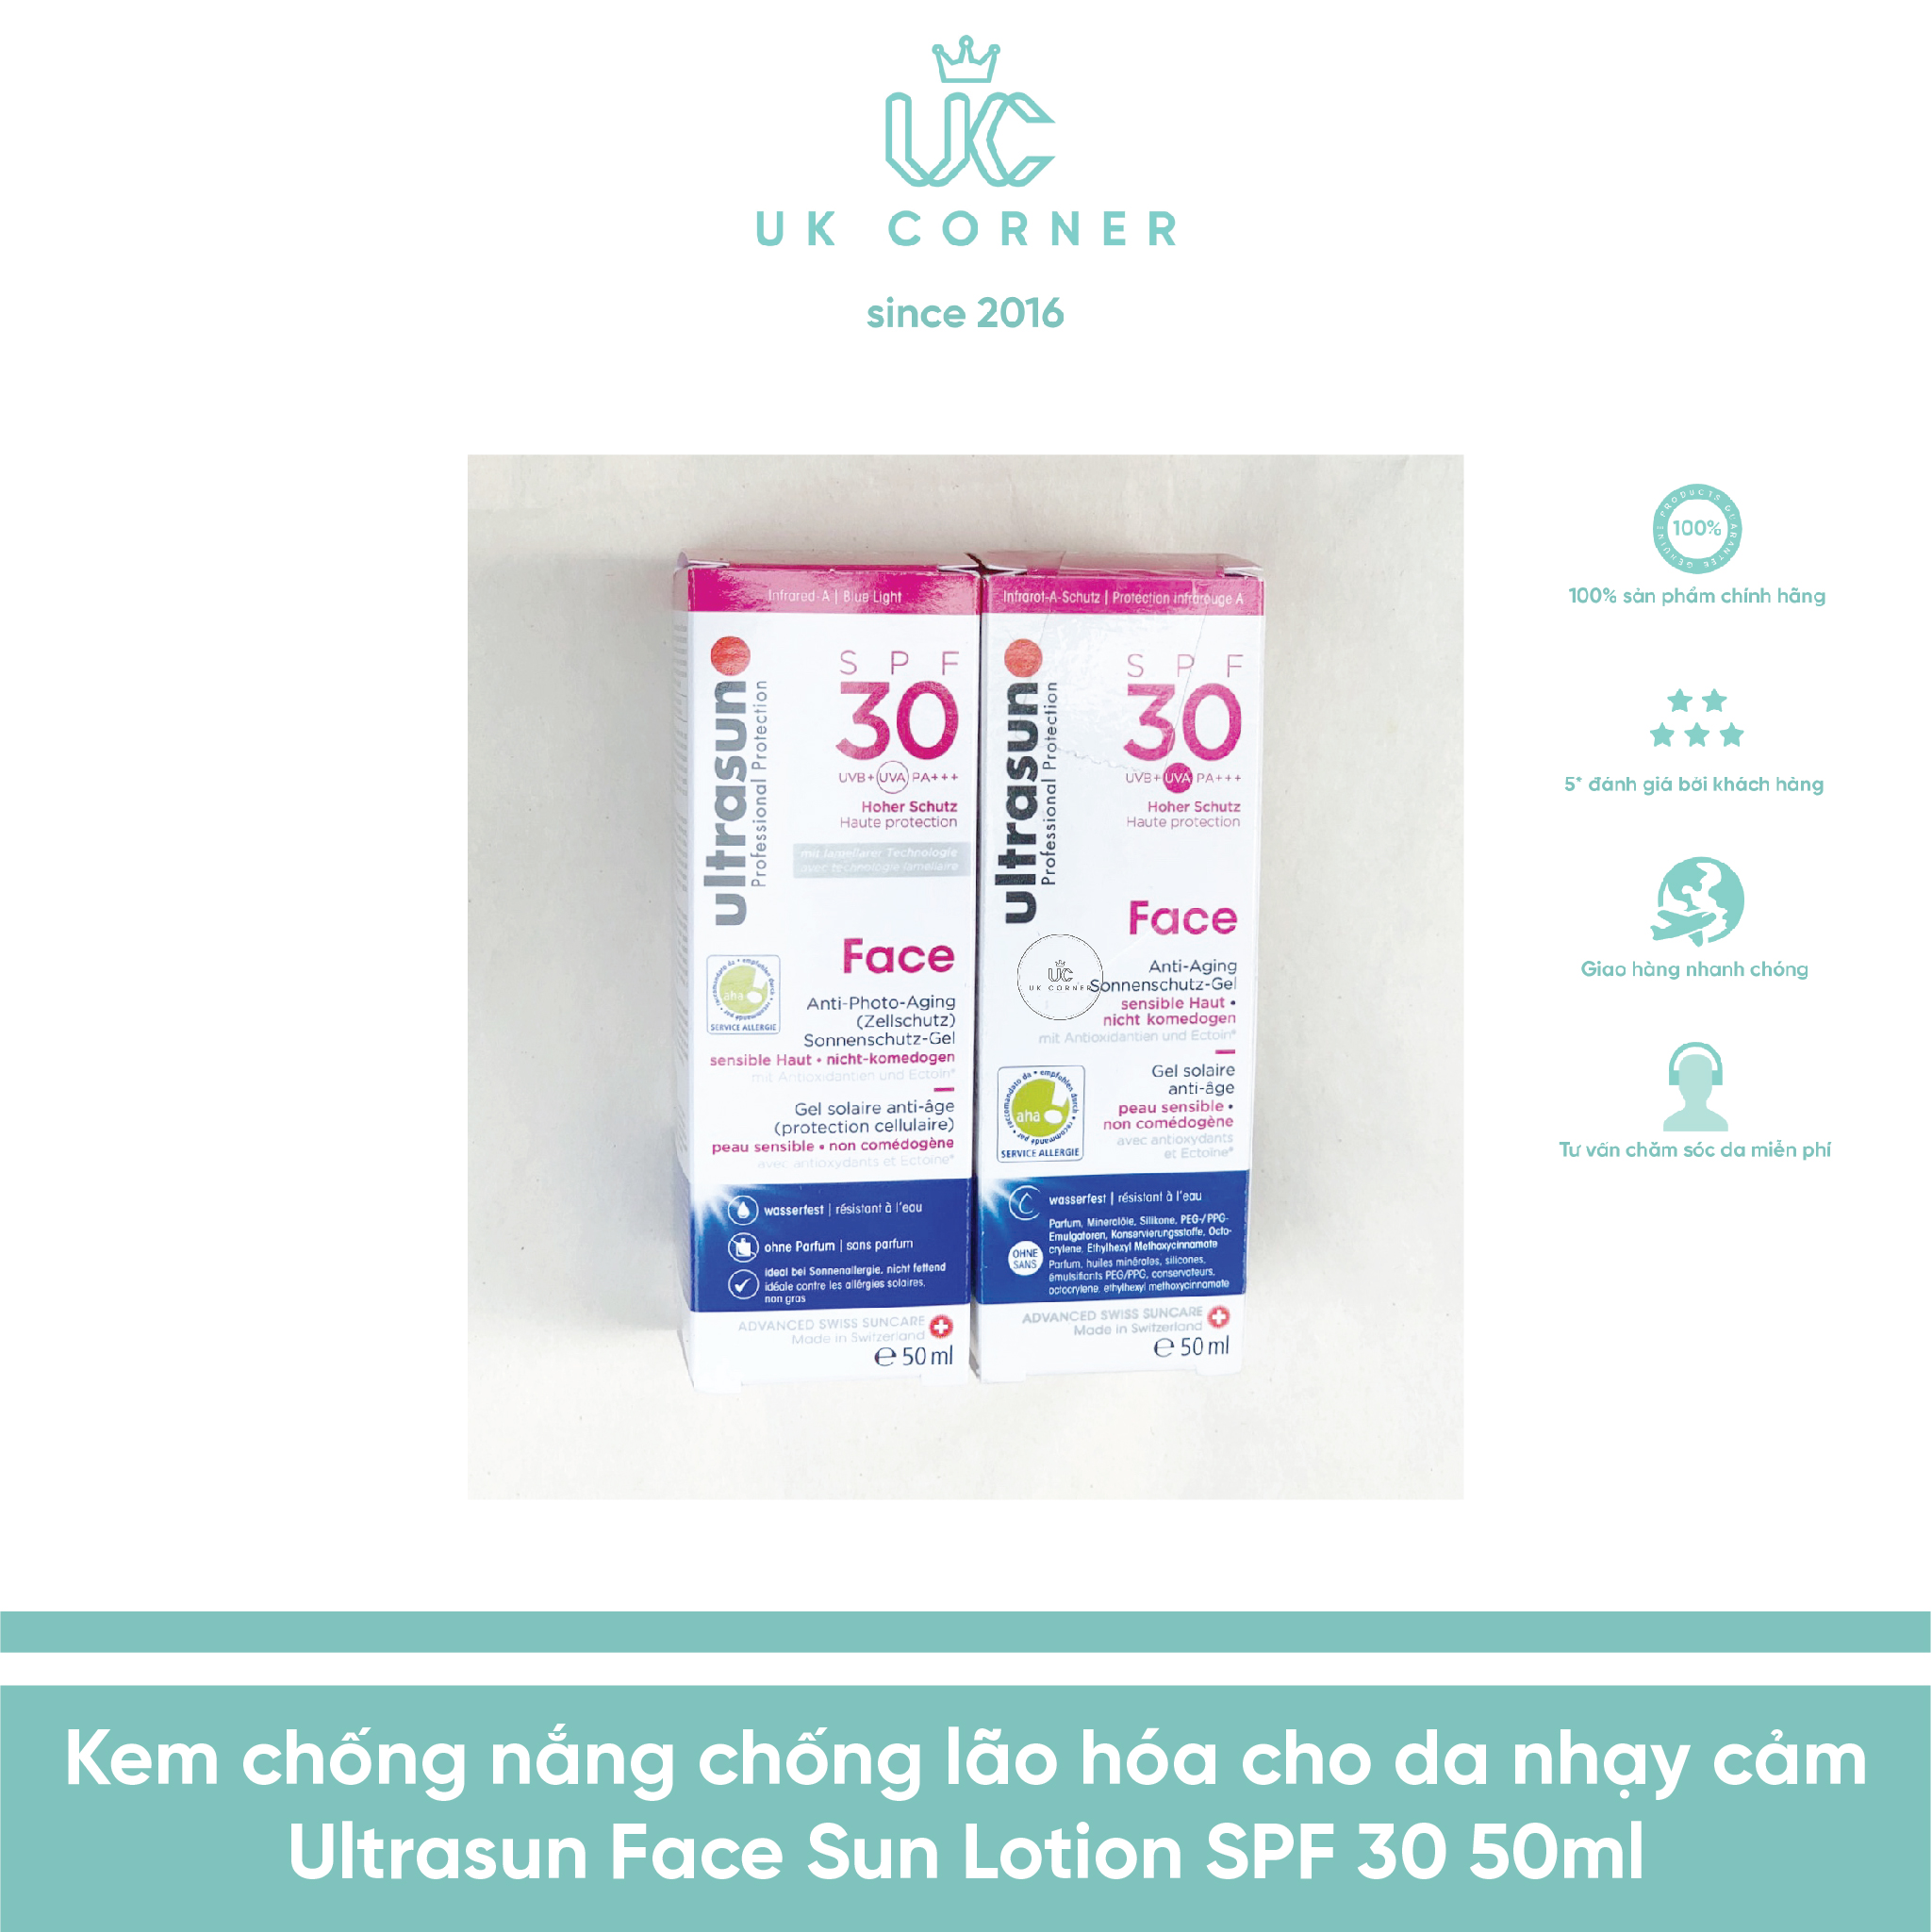 [BẢN MỚI] Kem chống nắng chống lão hóa cho da nhạy cảm Ultrasun Face Sun Lotion SPF 30 (Màu hồng)